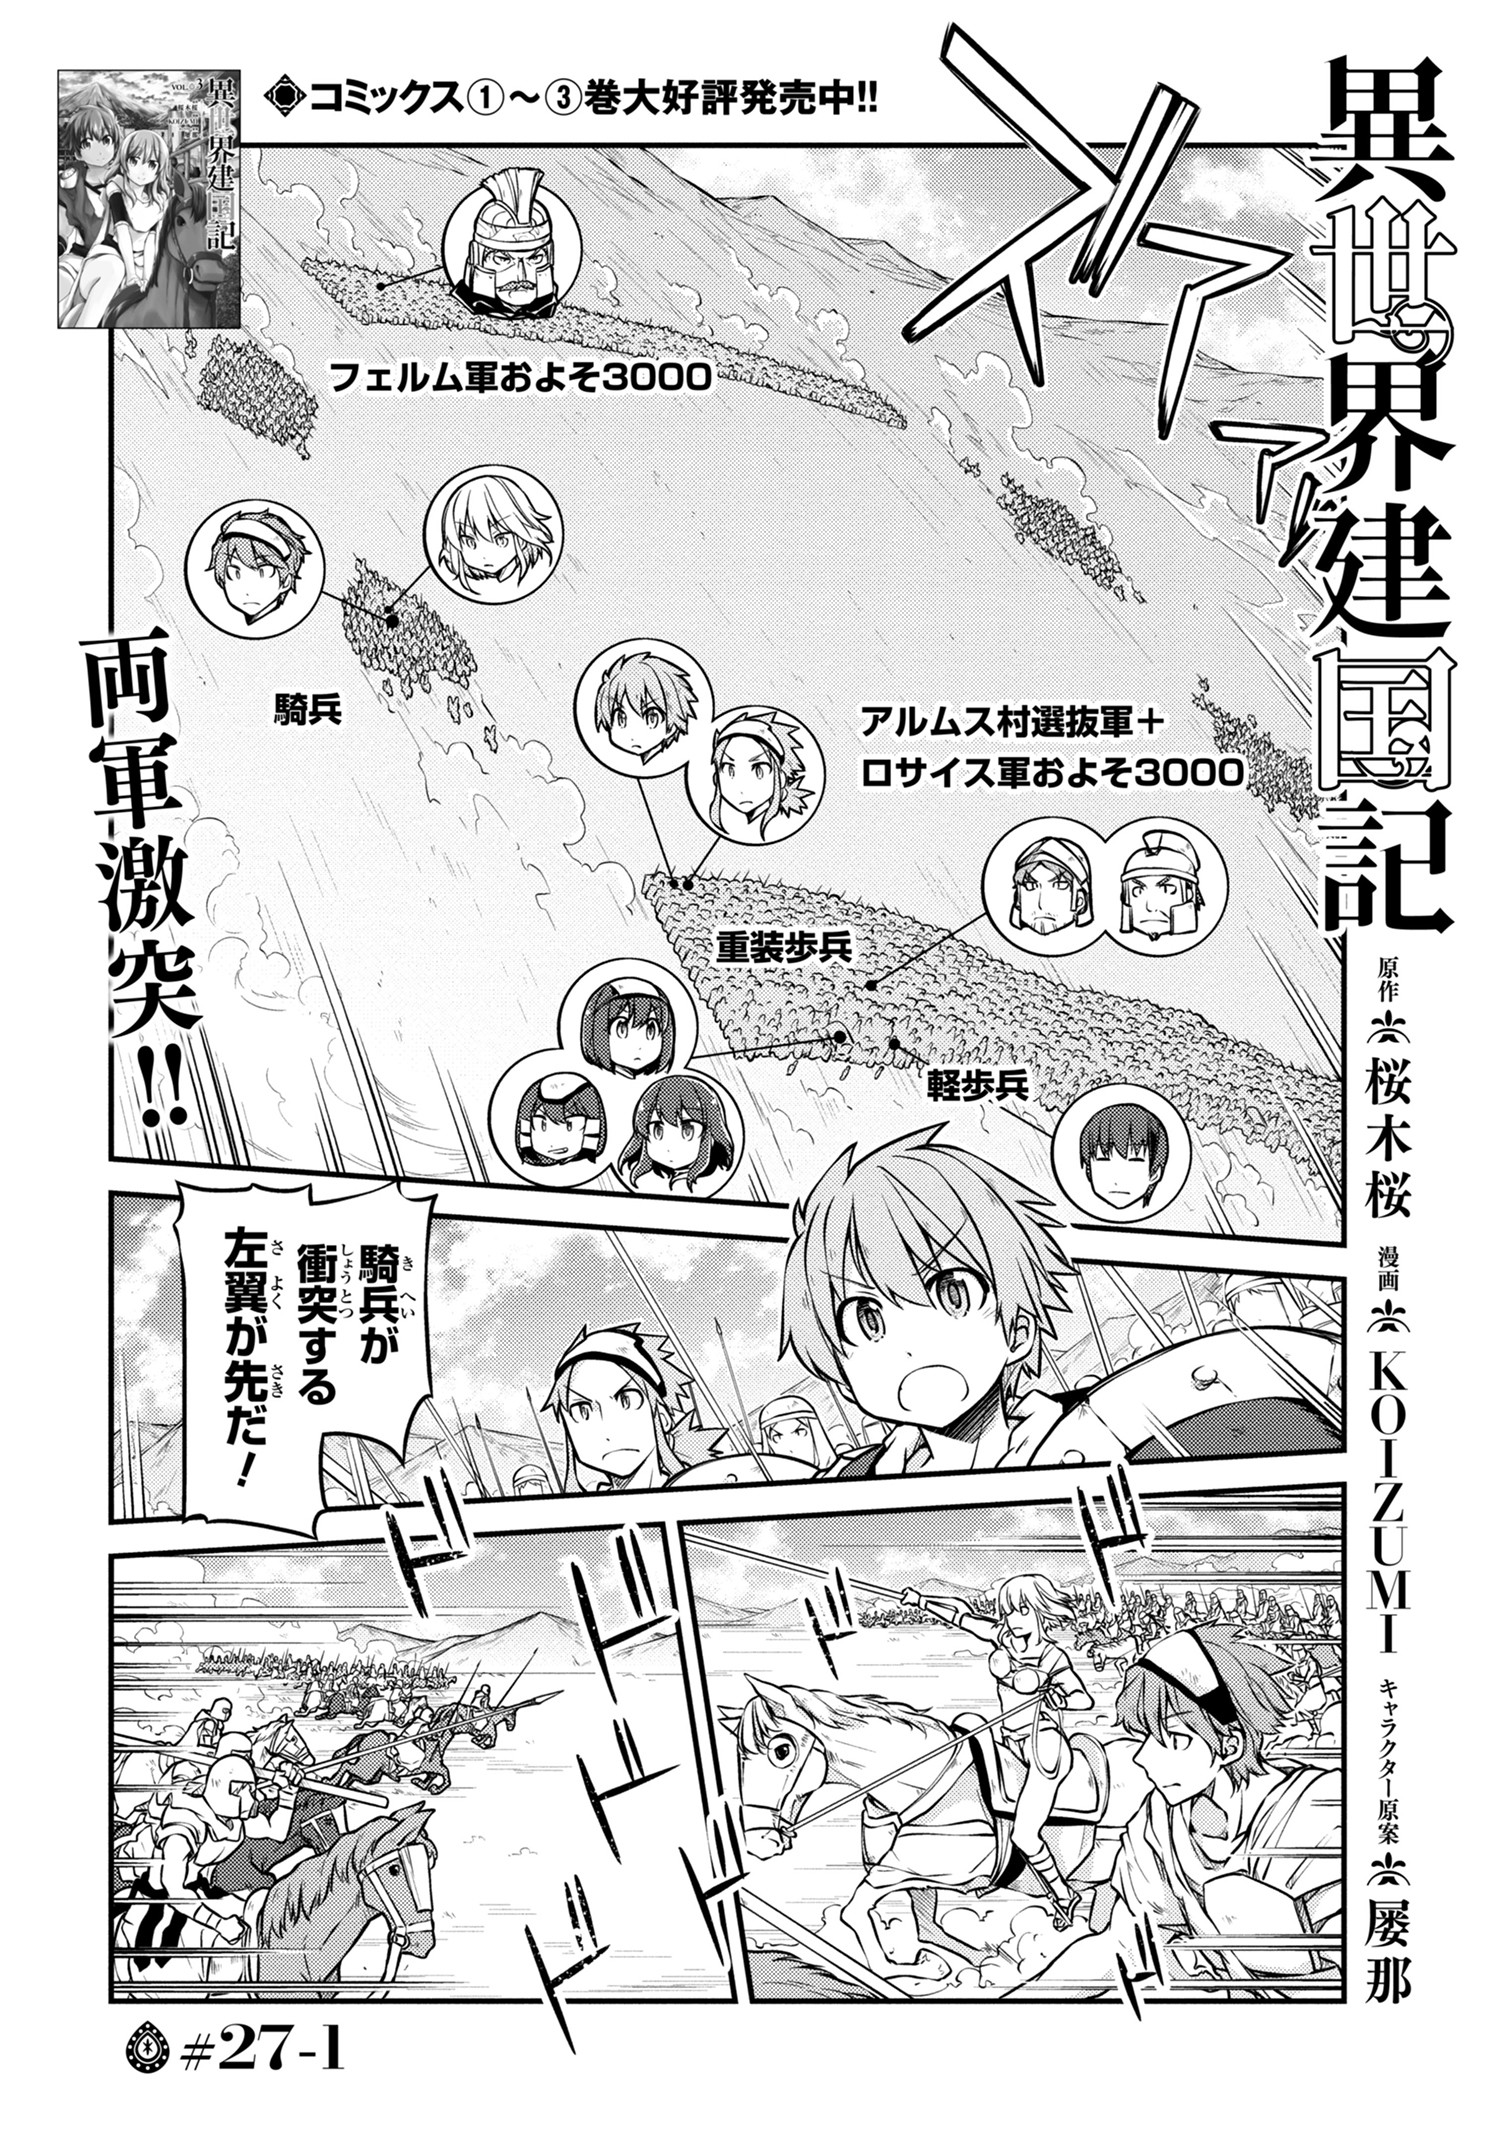 Isekai Kenkokuki Chapter 27 1 Page 1 Raw Manga 生漫画